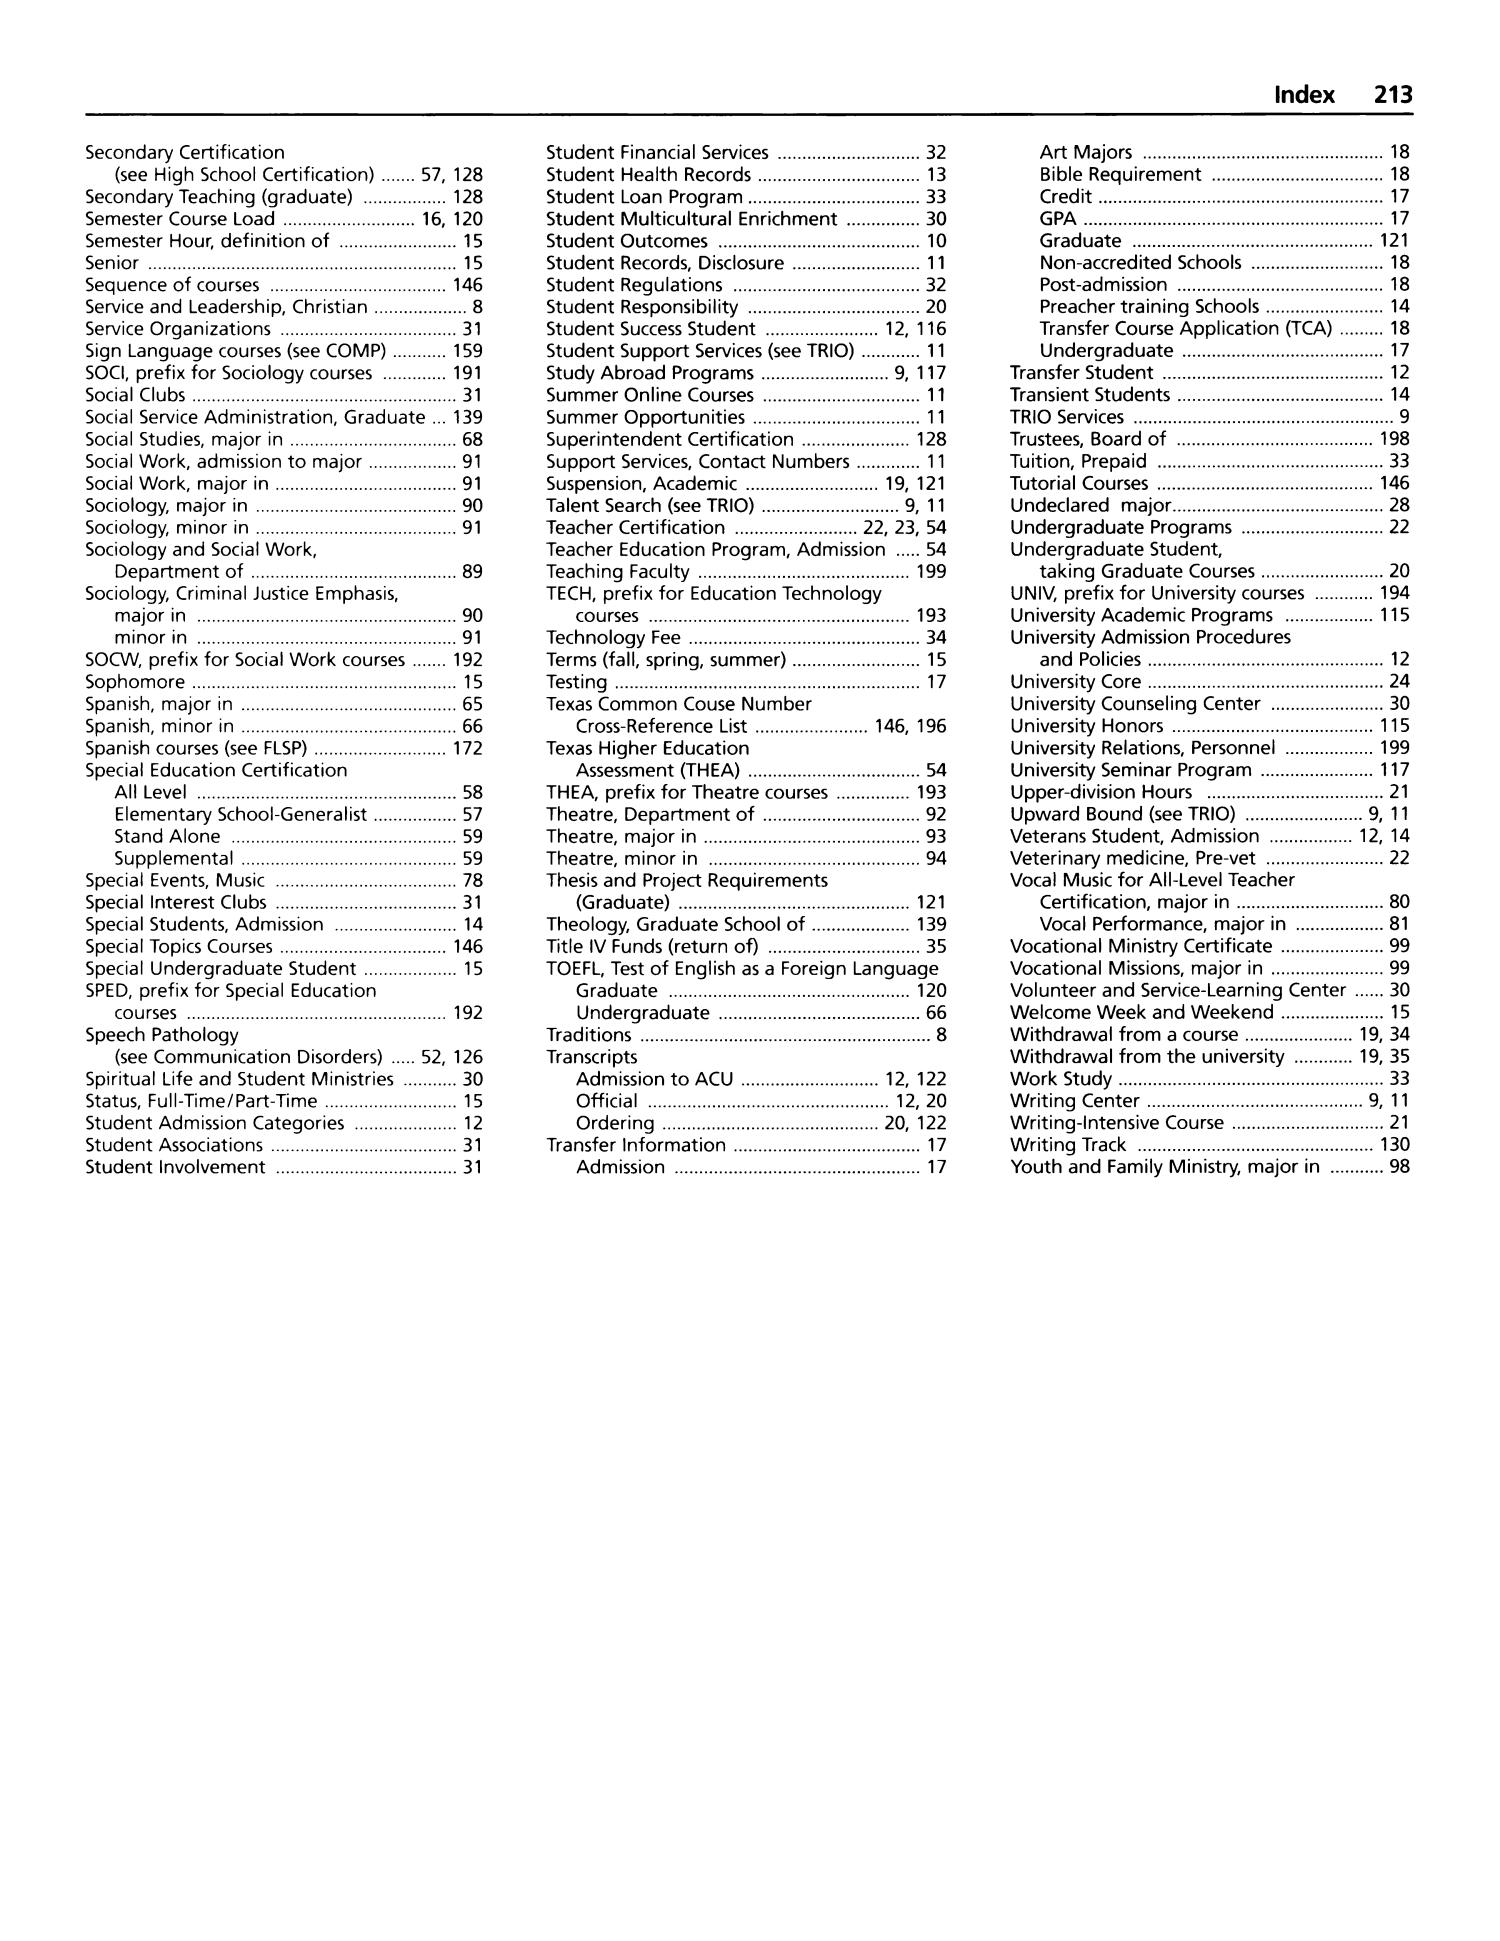 Catalog of Abilene Christian University, 2005-2006
                                                
                                                    213
                                                